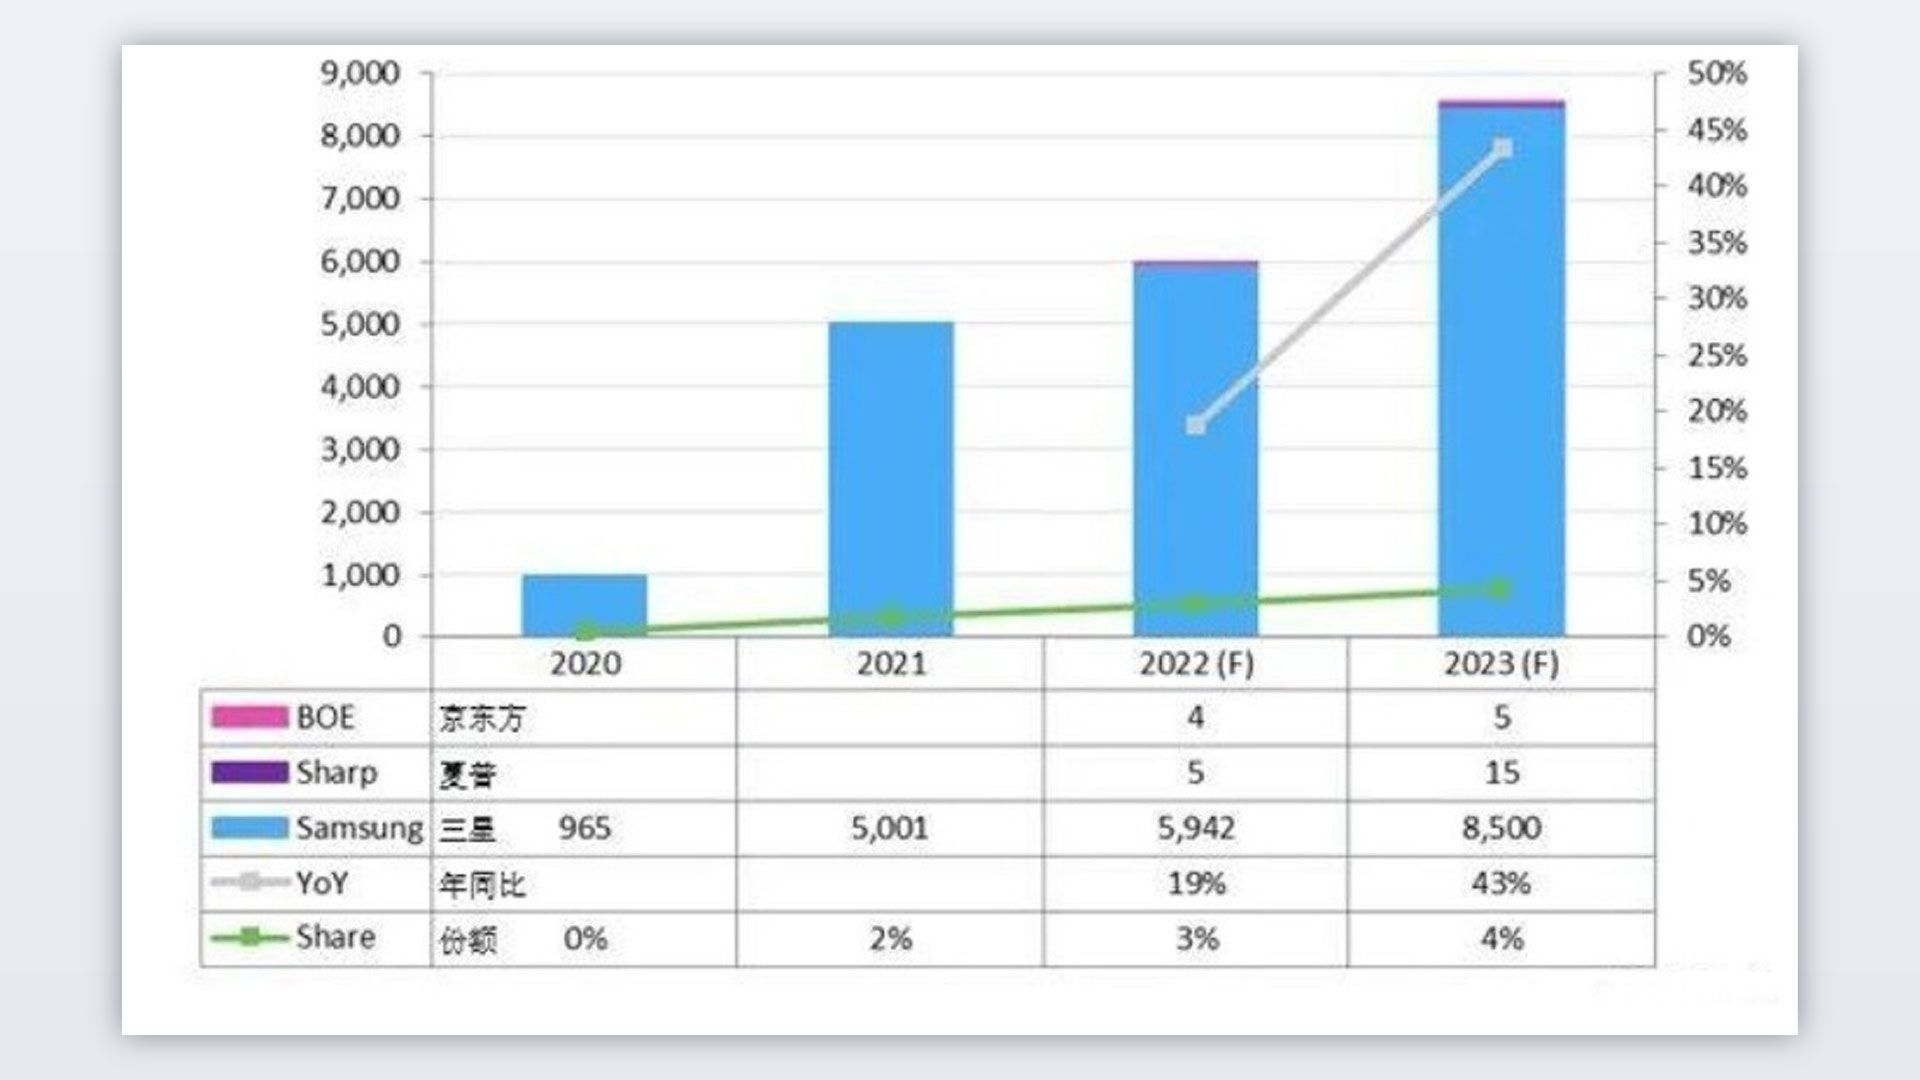 نمودار سامسونگ در بازار گوشی های هوشمند تاشو